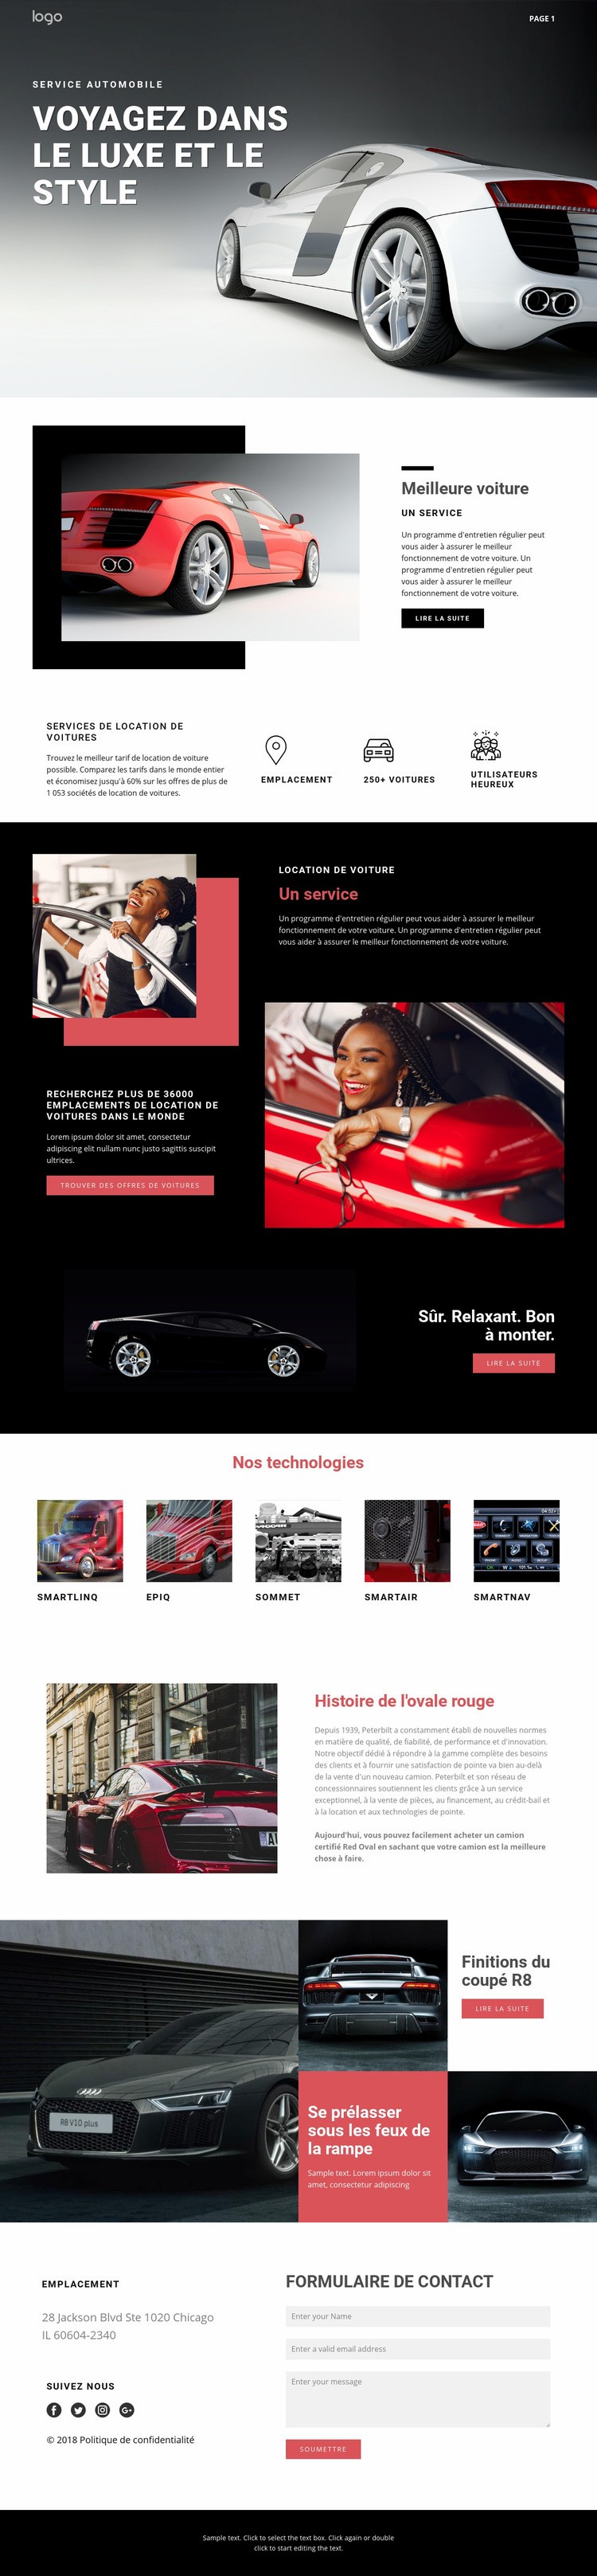 Voyager dans des voitures de luxe Conception de site Web